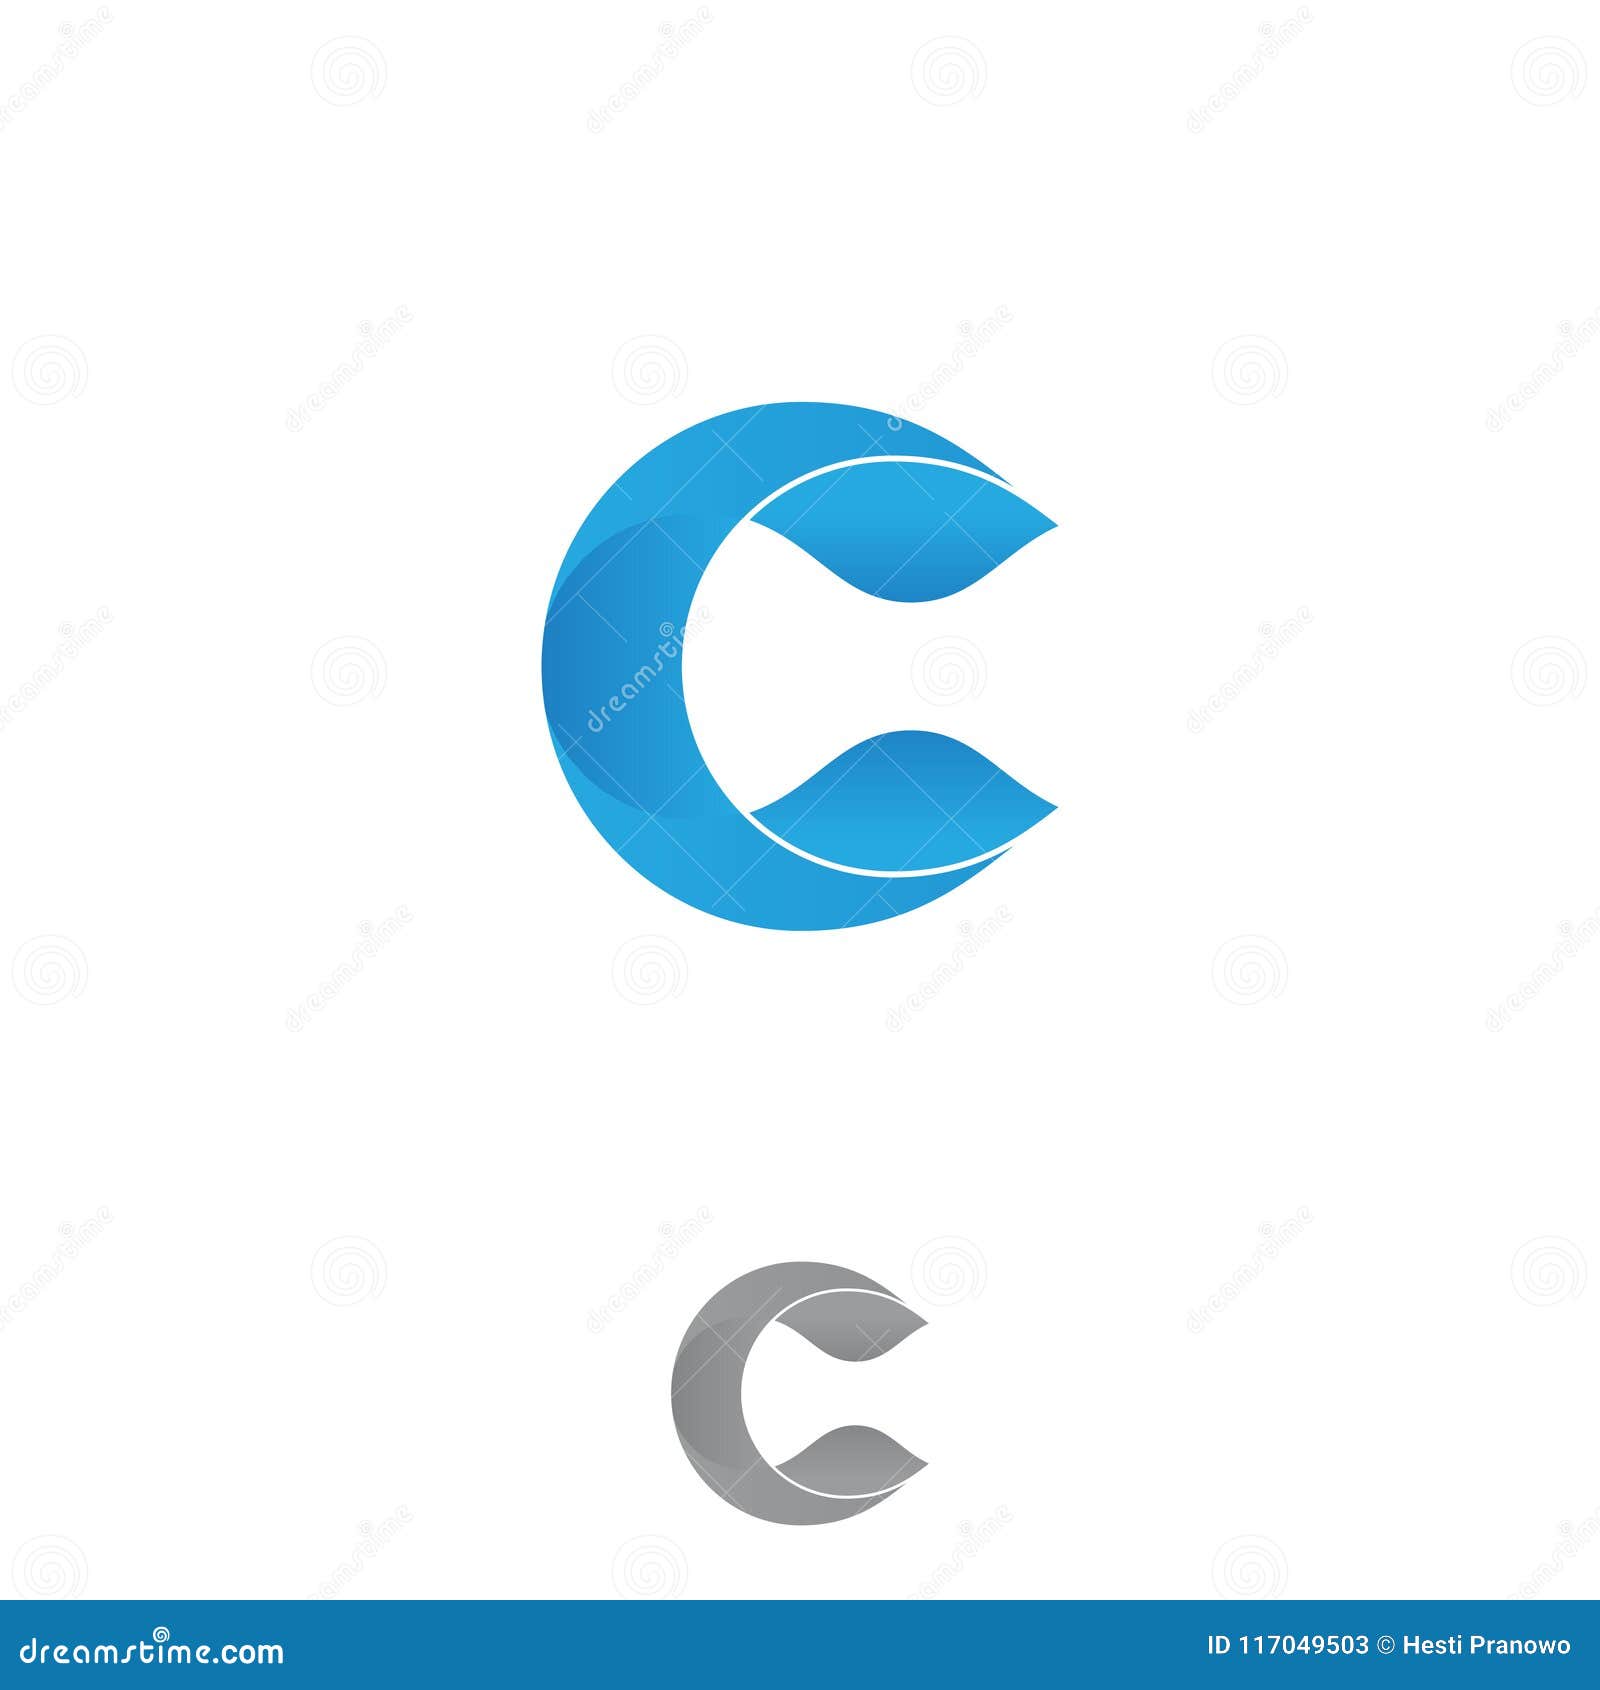 C application icon lenovo thinkpad p1 dimensions